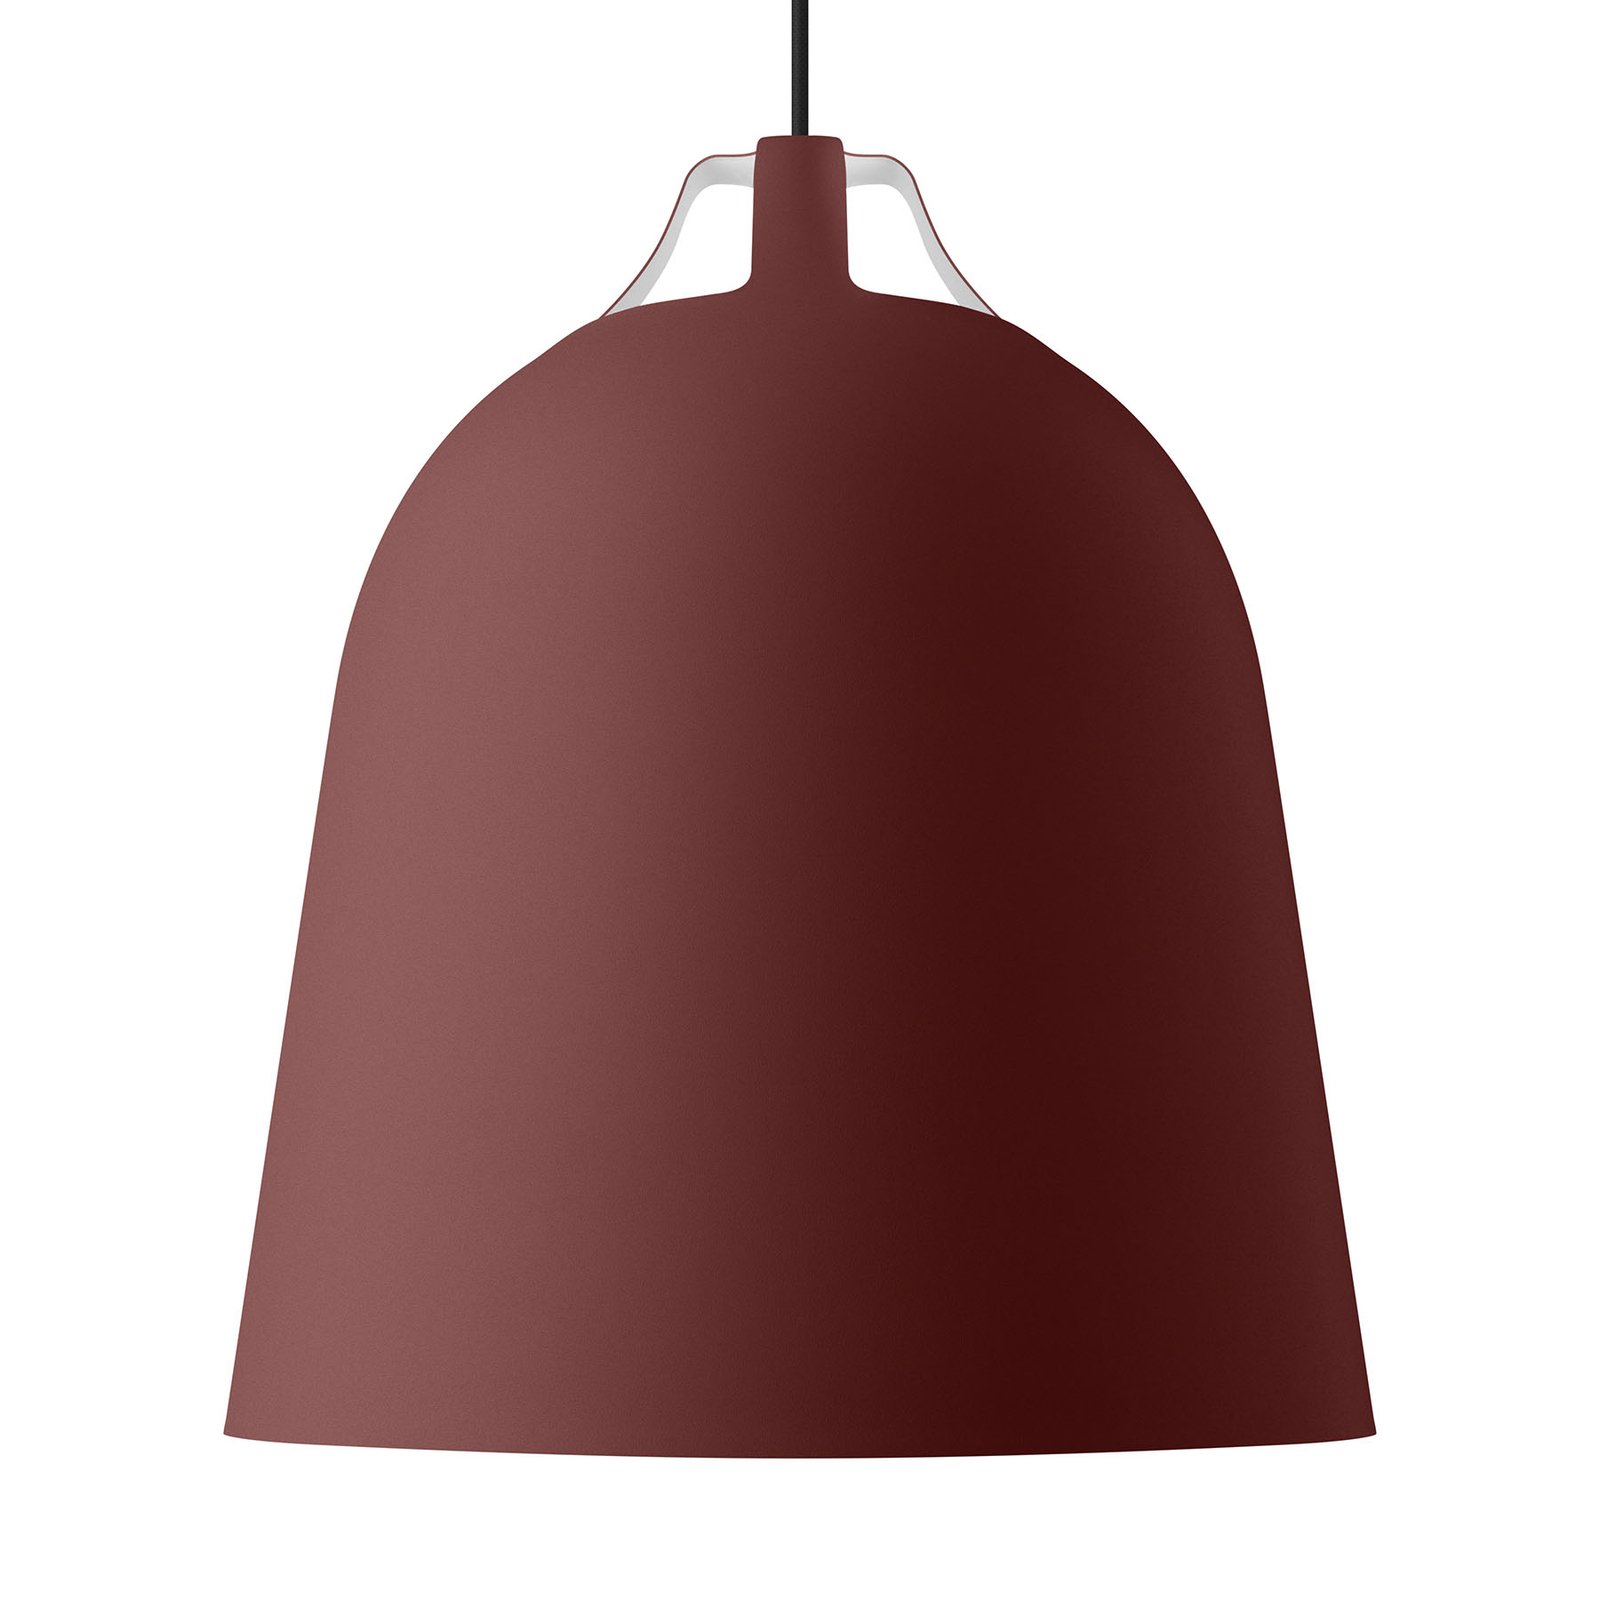 EVA Solo Clover lampa wisząca Ø 35cm, czerwona